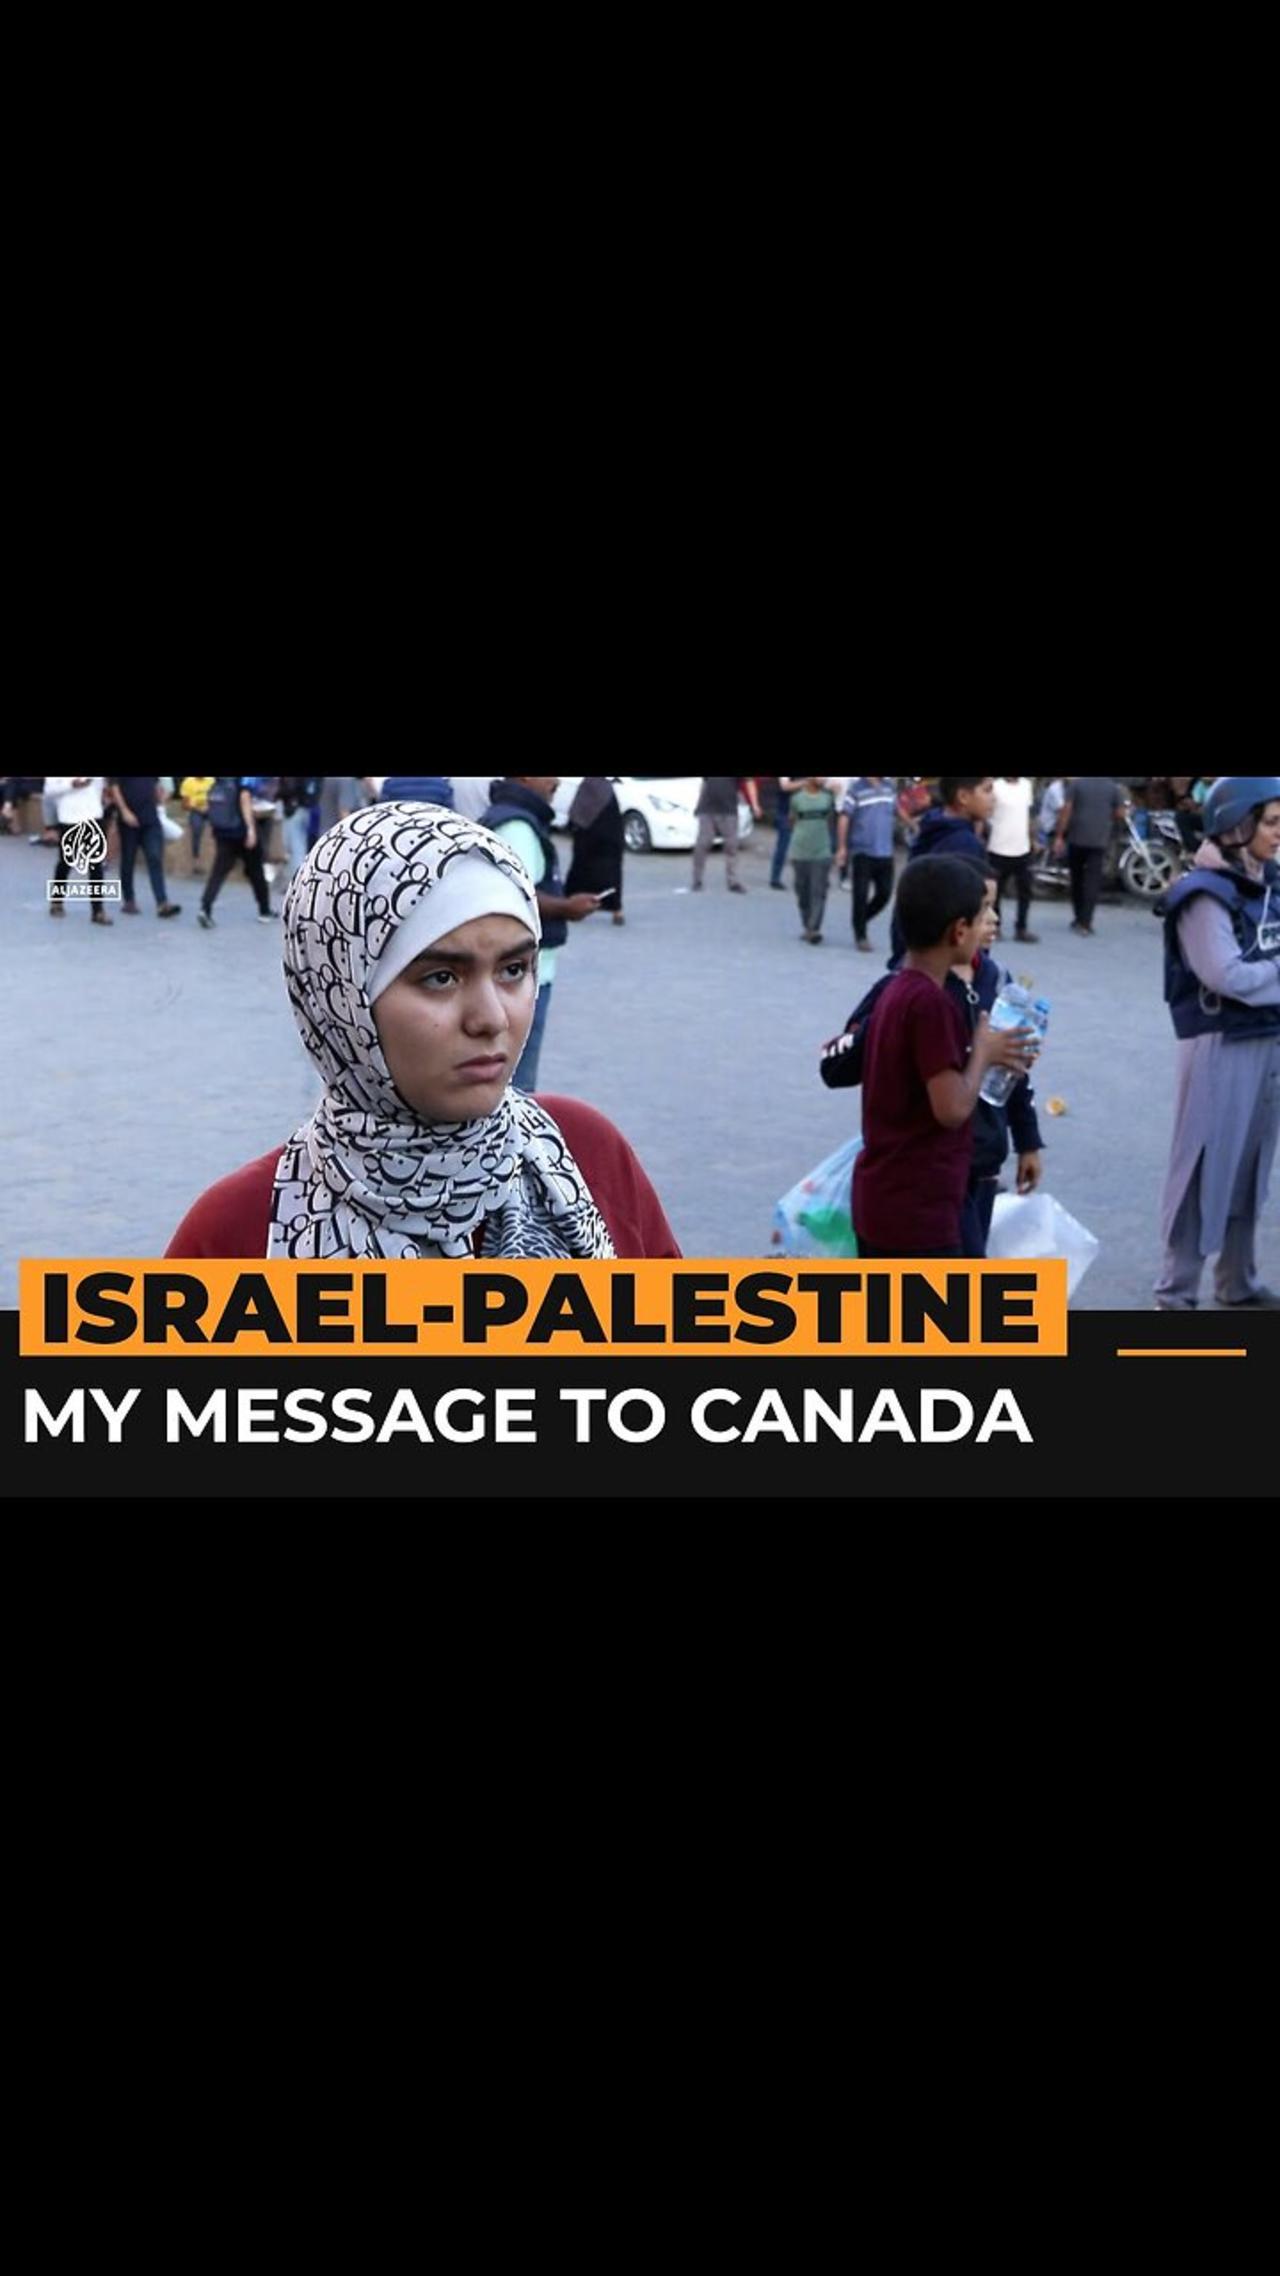 Teenager trapped in Gaza slams Canada's lack of help | Al Jazeera Newsfeed